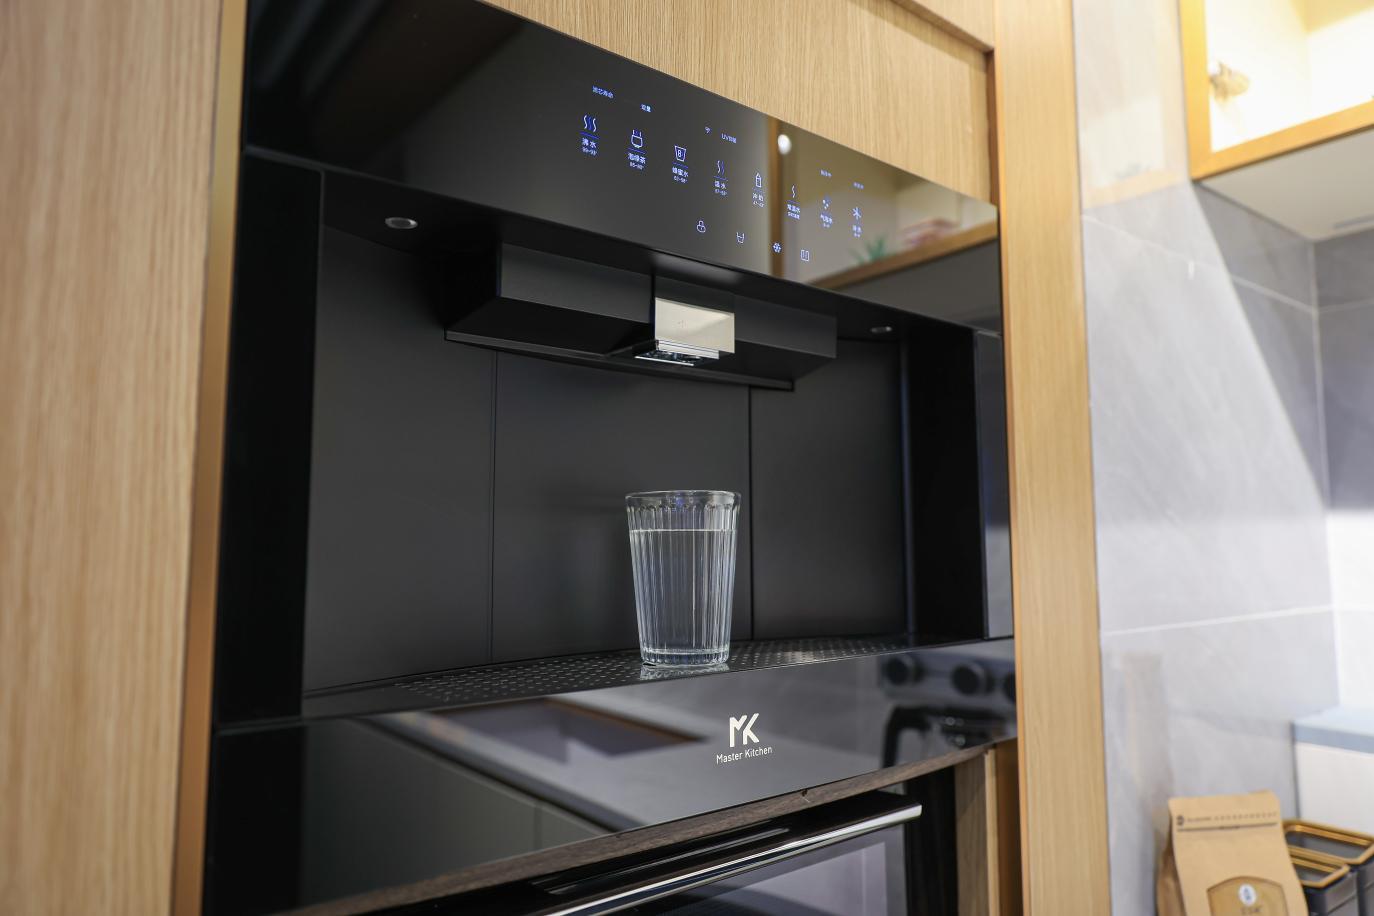 嵌入式气泡净饮水机最专业的就是master kitchen的黑松露系列么?